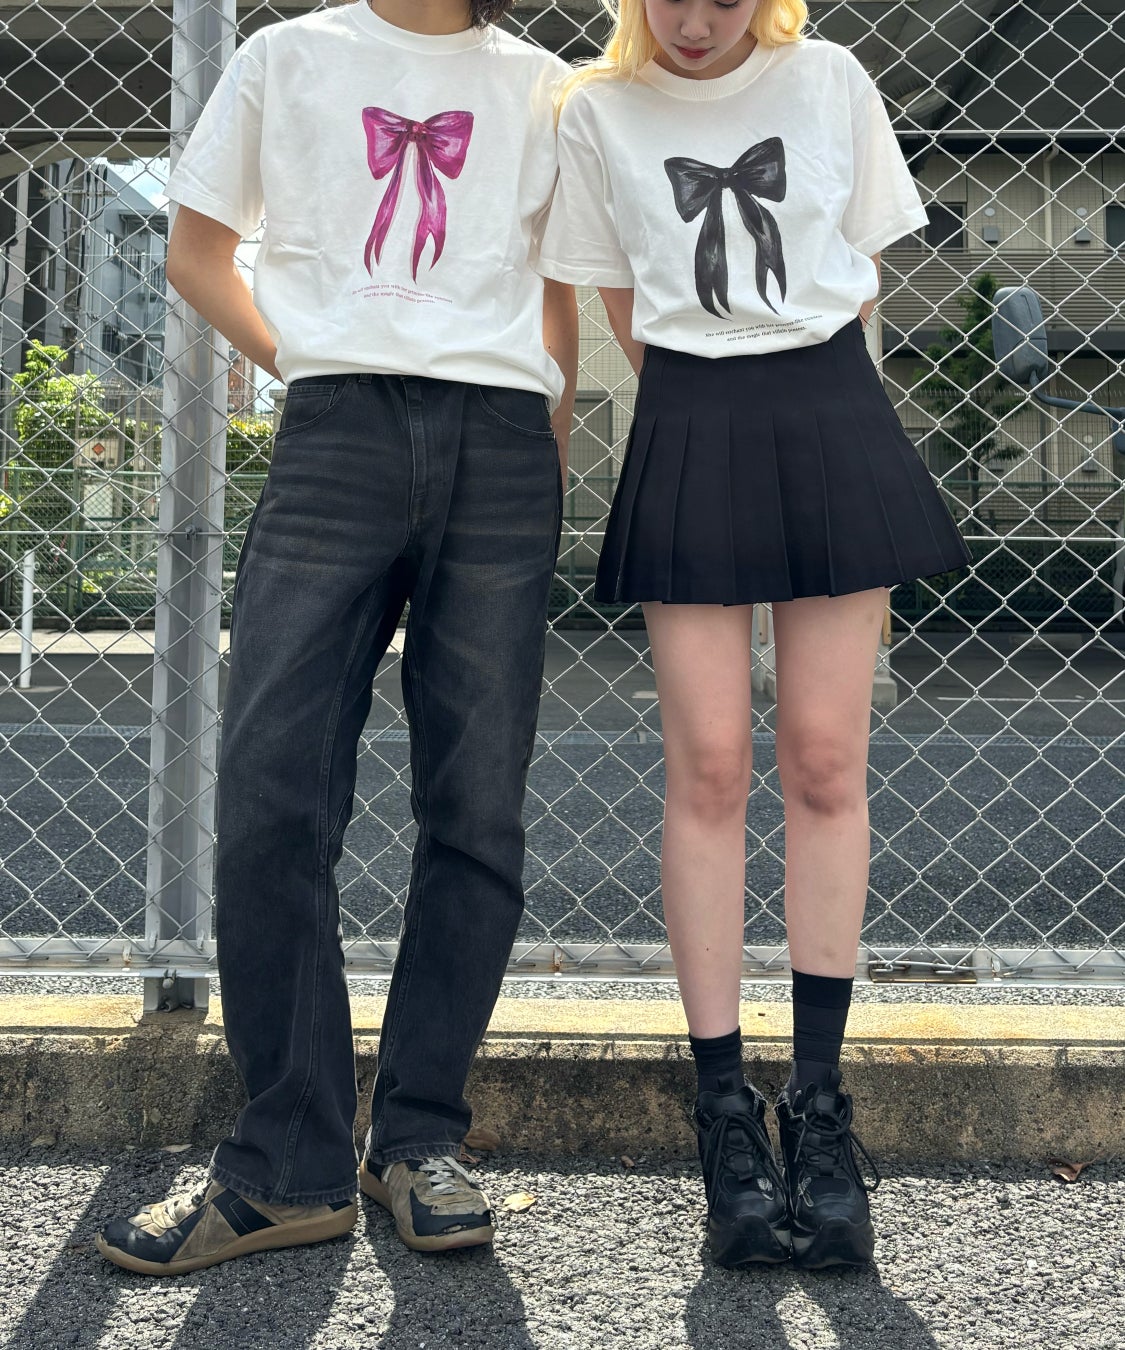 【大阪文化服装学院】百人百色のTシャツを生み出す三澤㈱の新ブランド「UNIT CHEST」プロジェクトに全面協力...